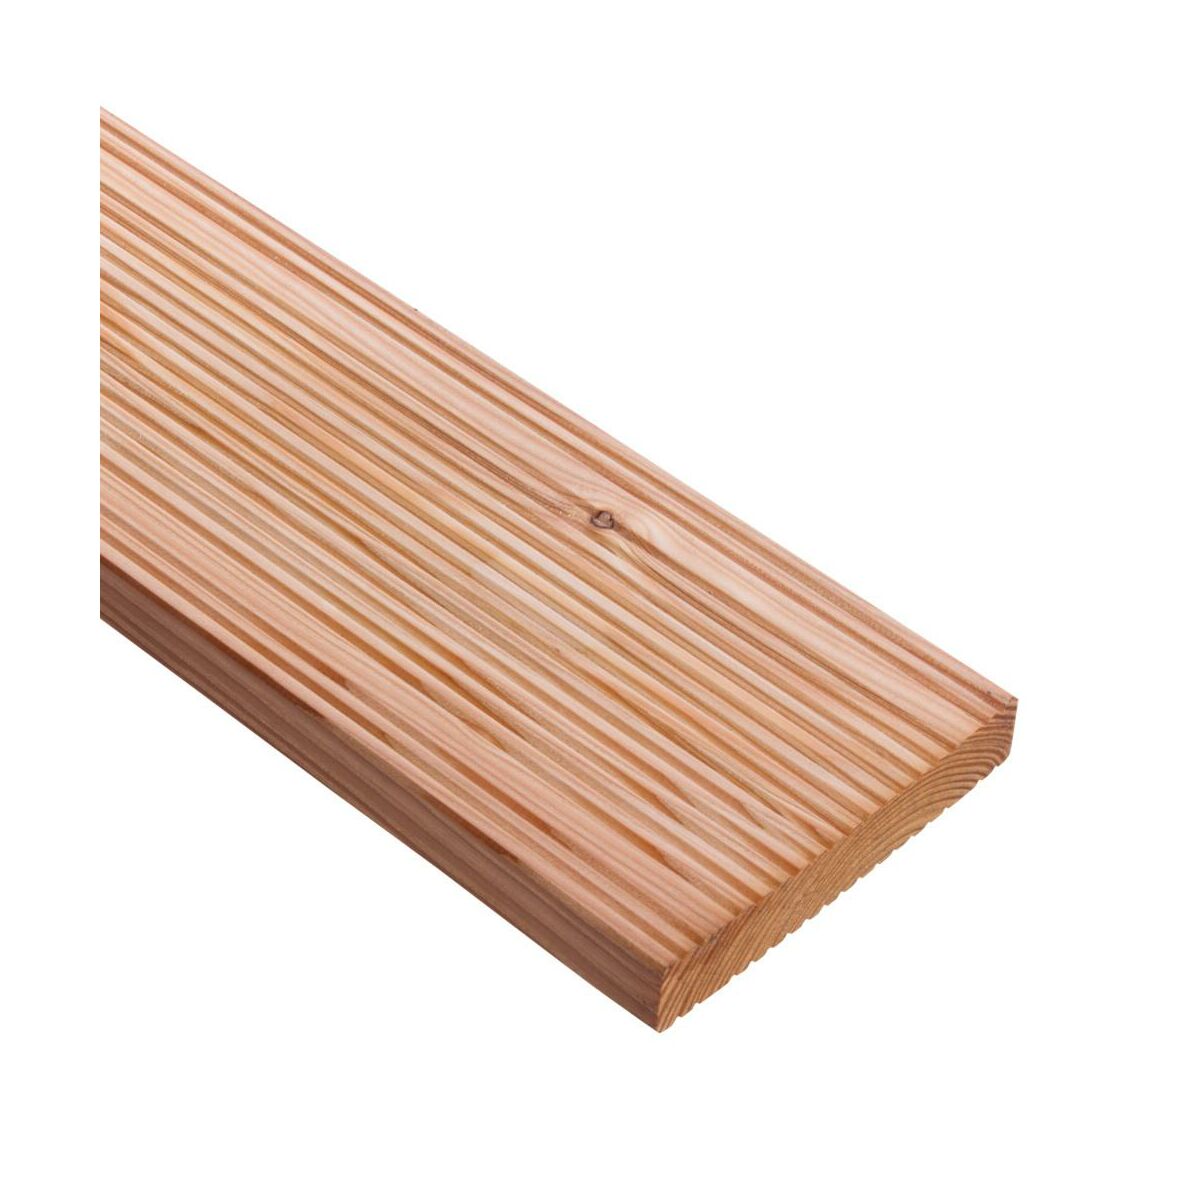 Deska tarasowa drewniana 14.5x240x2.5 cm Modrzew europejski DLH